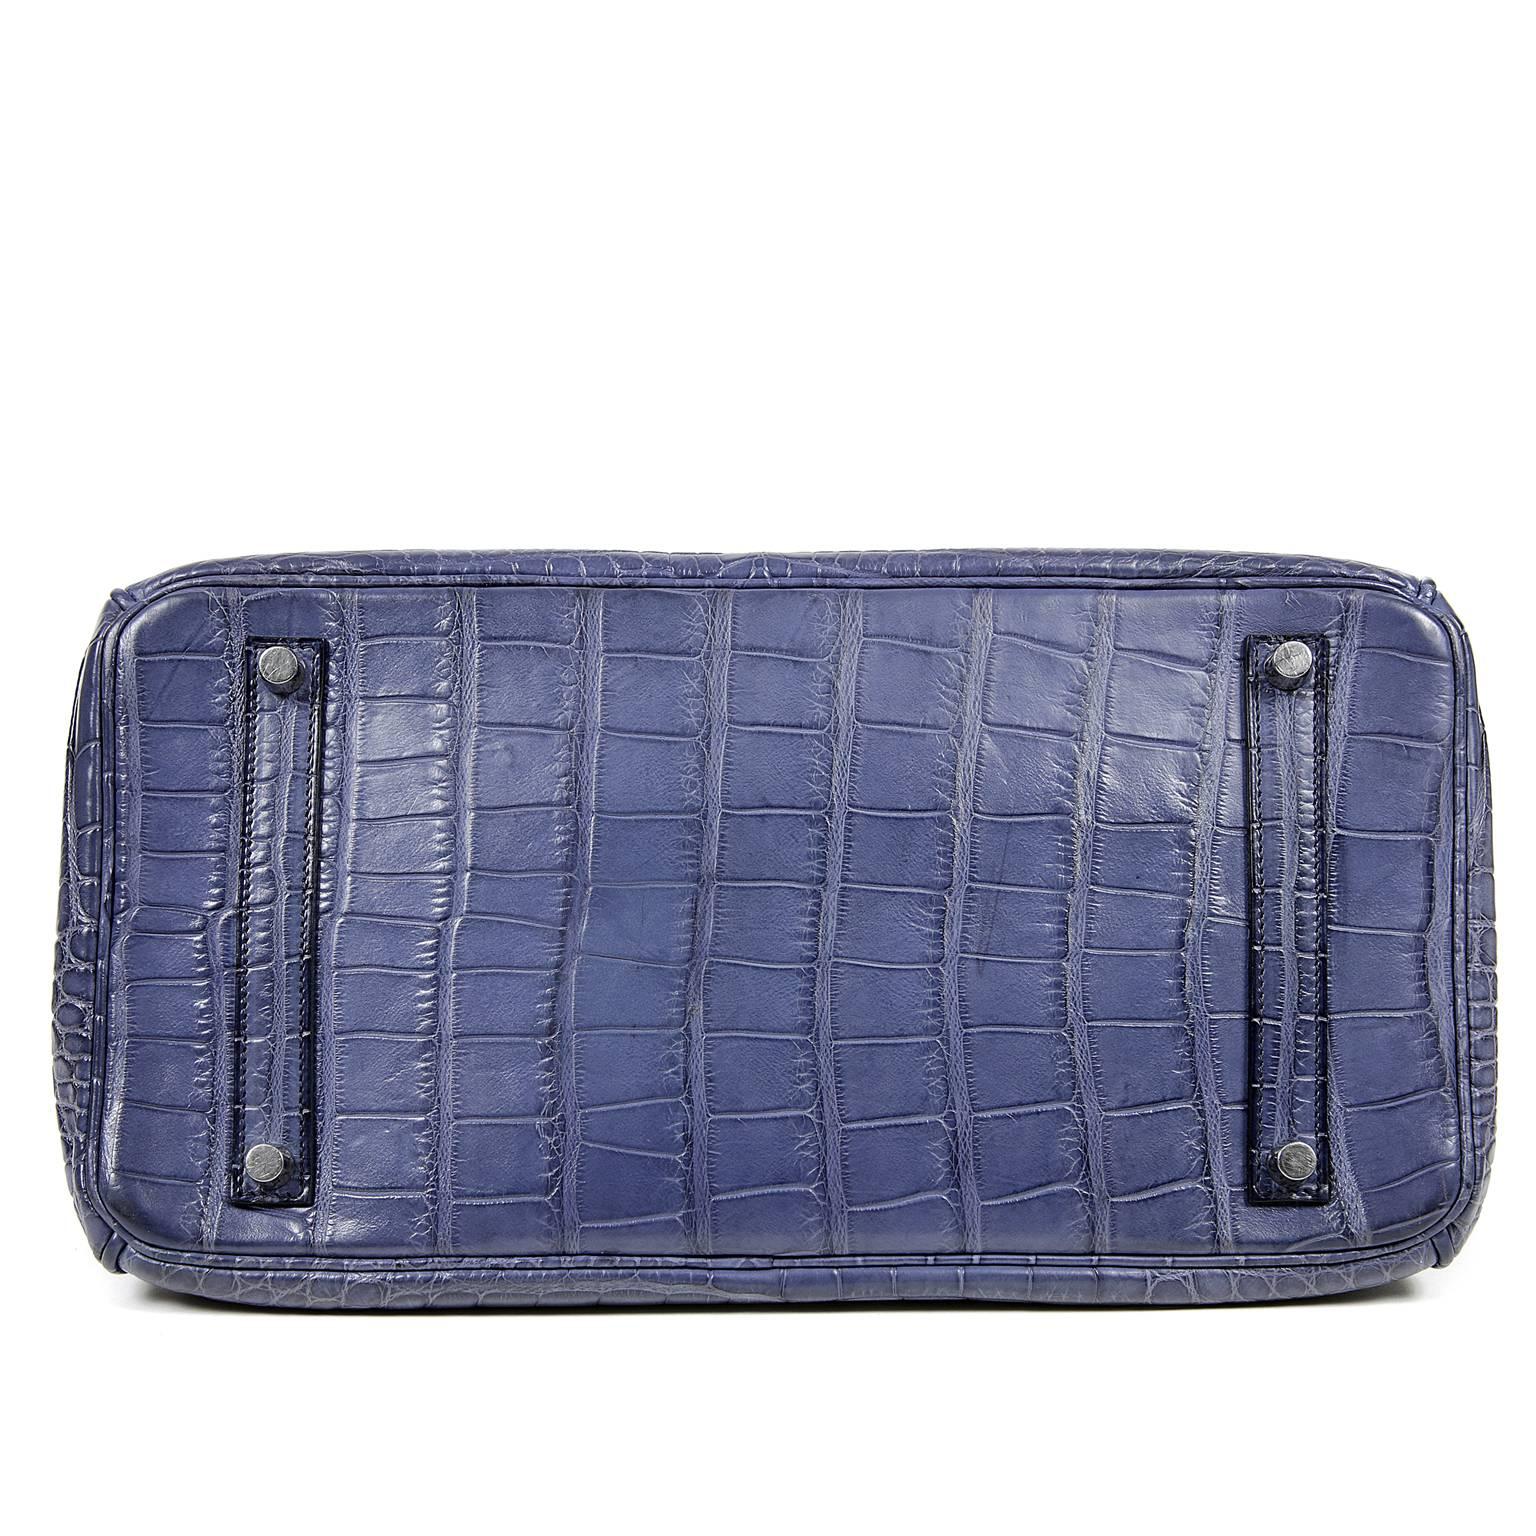 Gray Hermès Brighton Blue 35 cm Birkin Bag- Matte Alligator with PHW